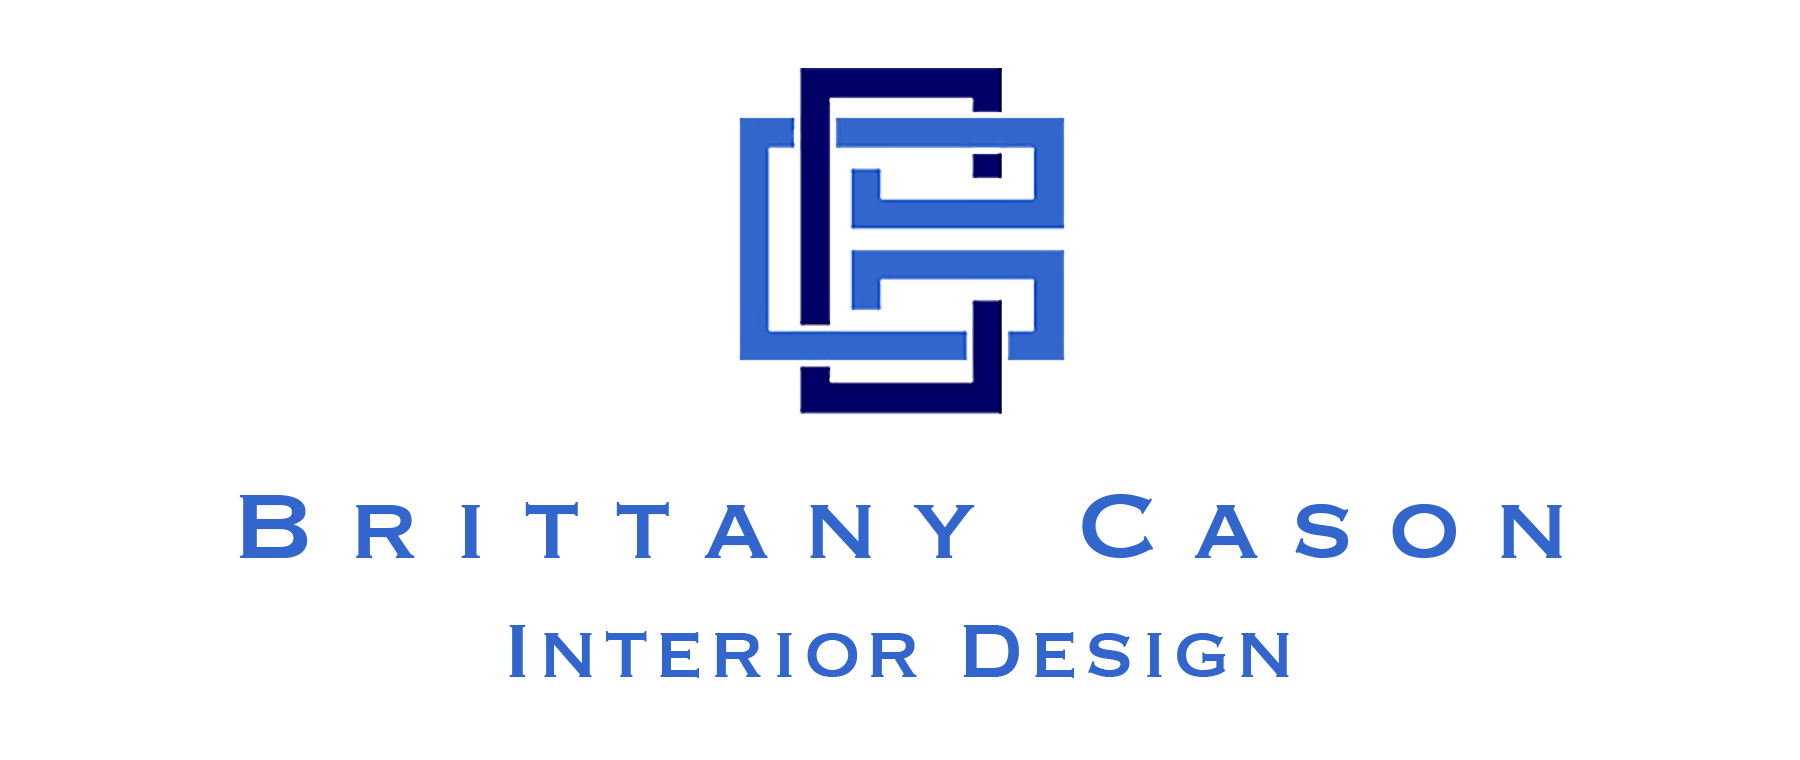 Brittany Cason Interior Design